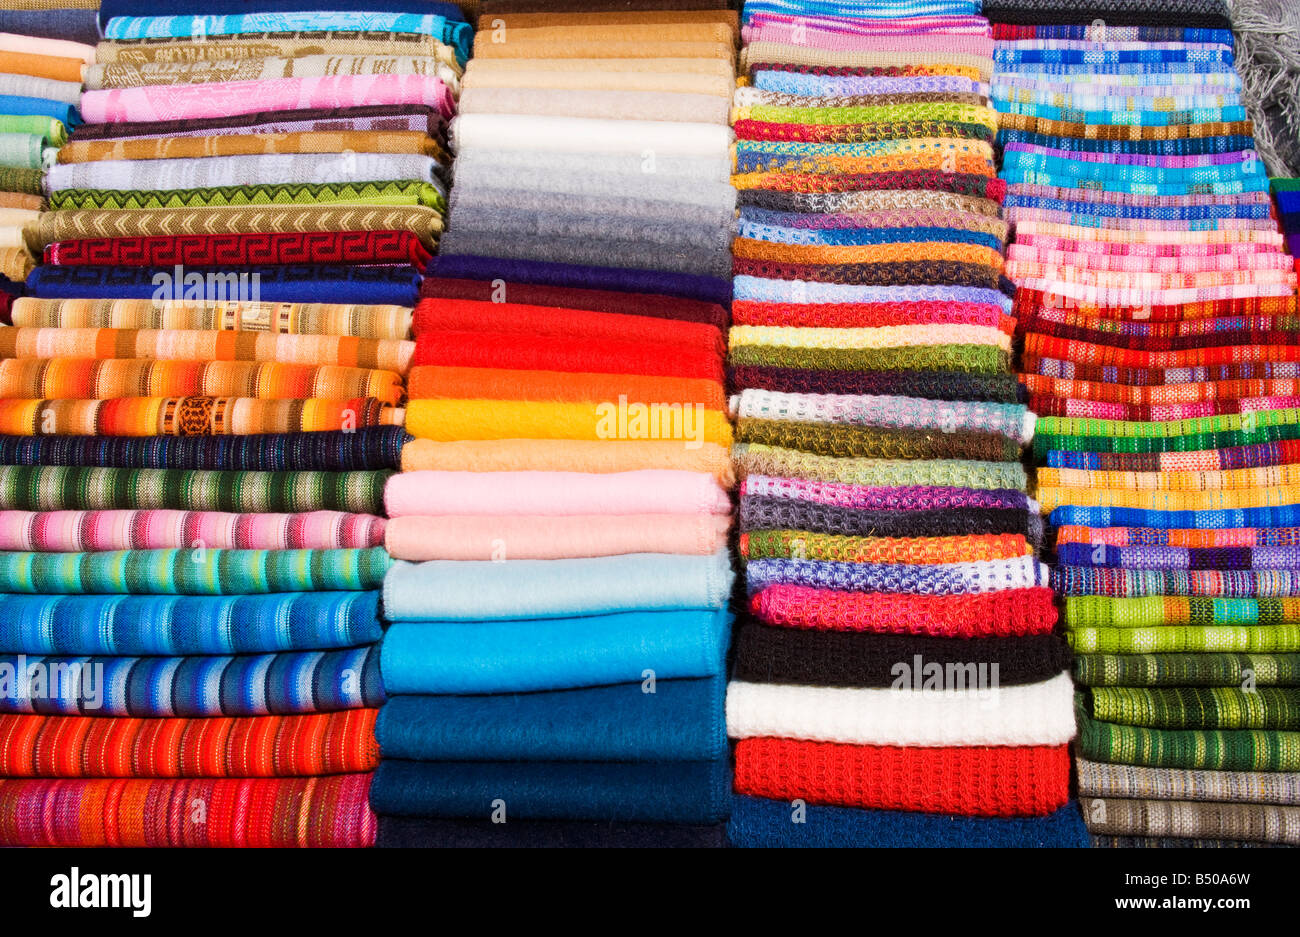 de Perú chales y bufandas pashminas plegar dar colorida imagen abstracta Fotografía de stock - Alamy